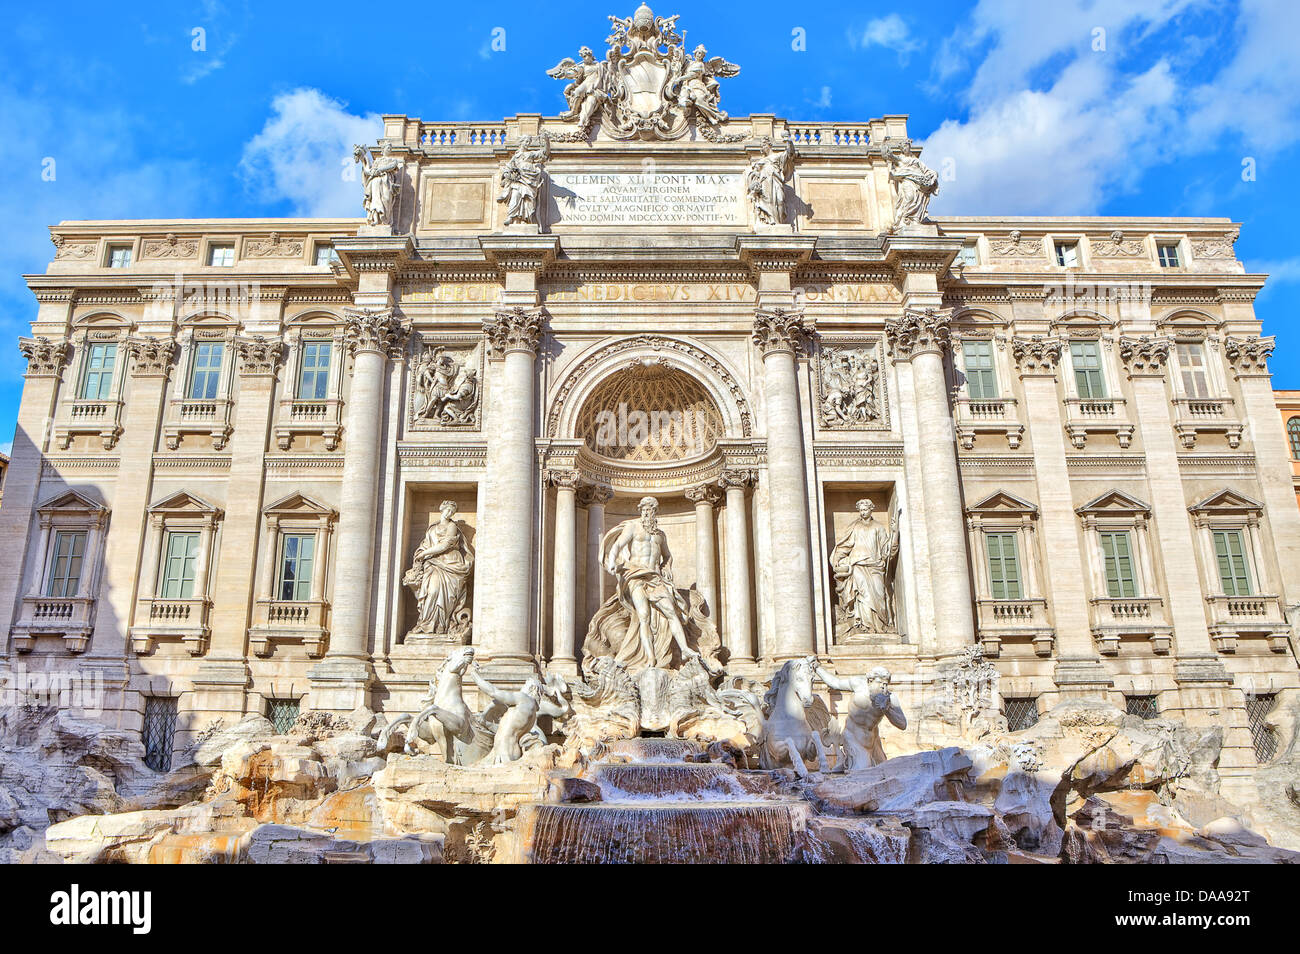 La facciata della celebre Fontana di Trevi a Roma, Italia. Foto Stock